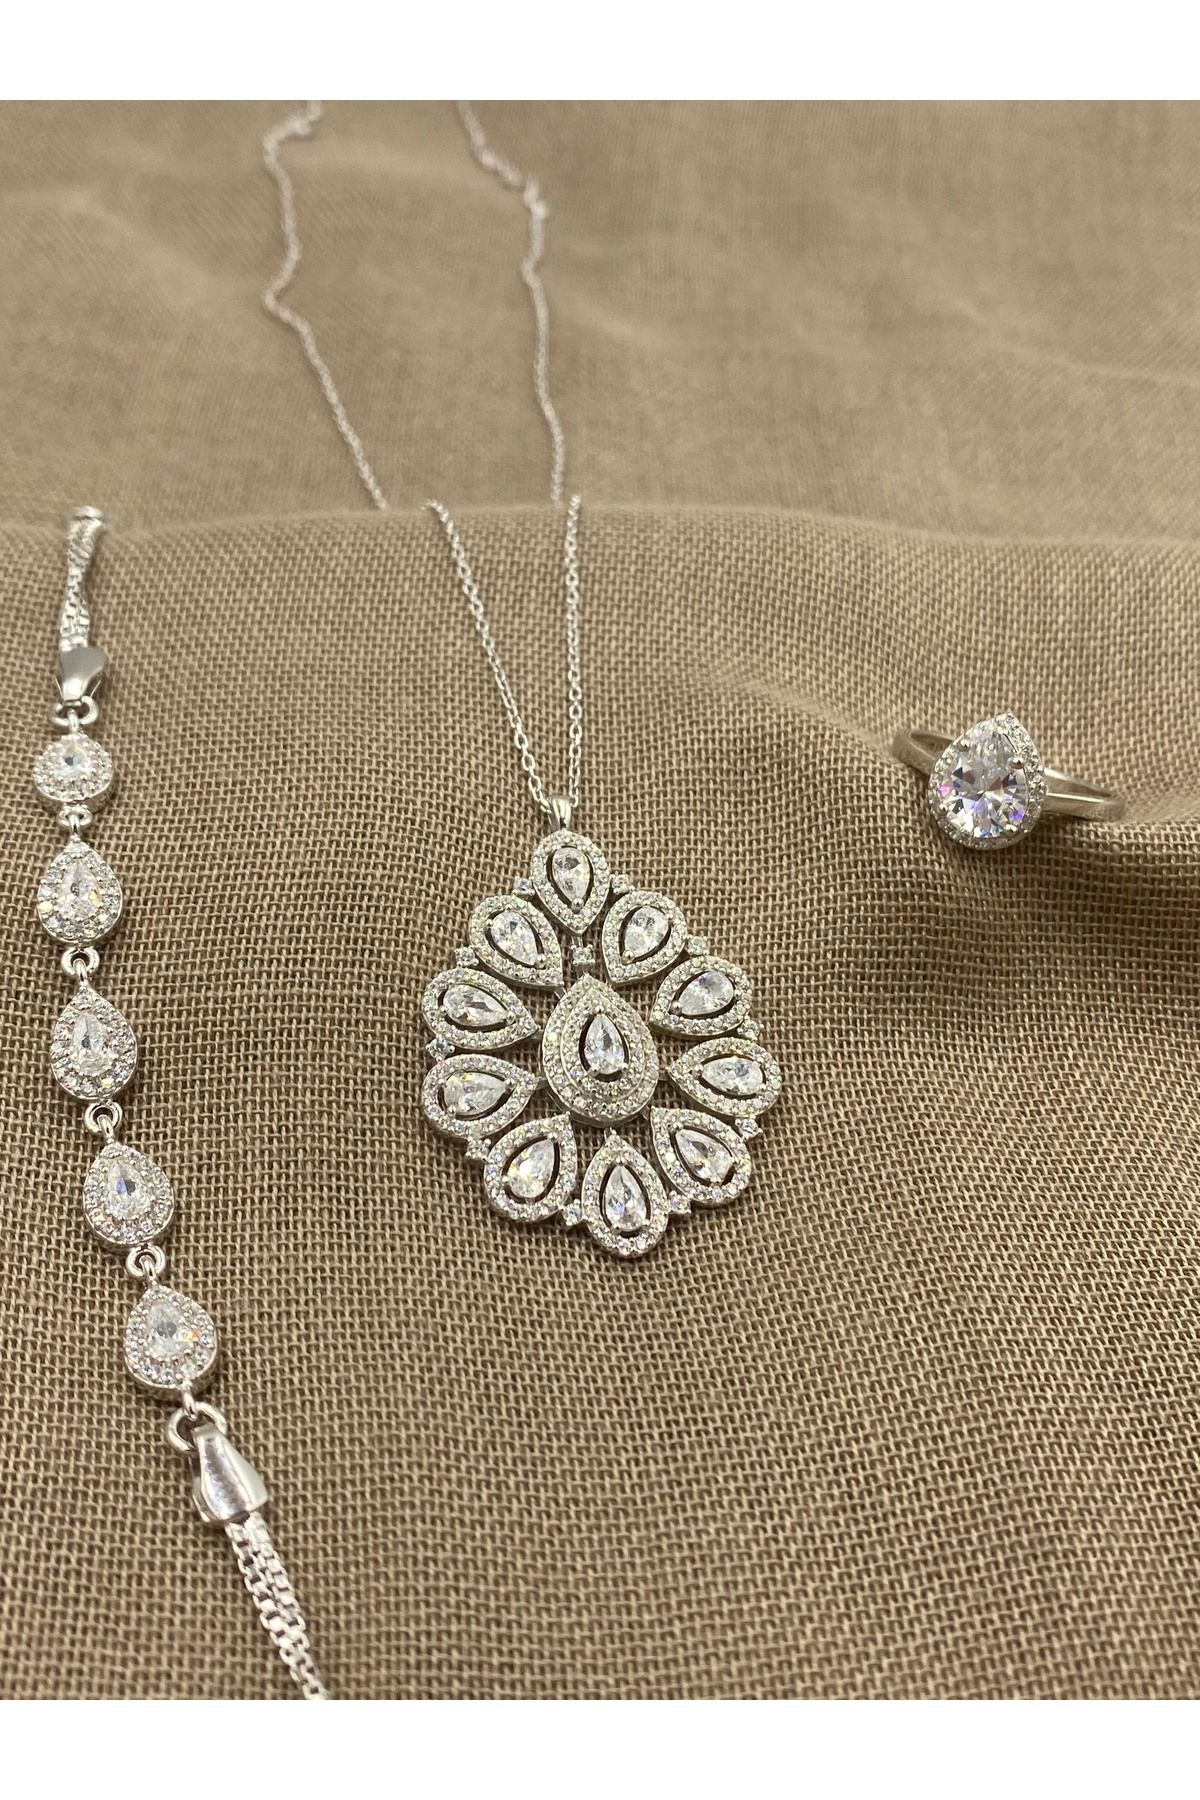 Inure Jewelry Silver Beyaz Sultan Model 925 Ayar  Gümüş 3'lü Set Kolye & Bileklik & Yüzük